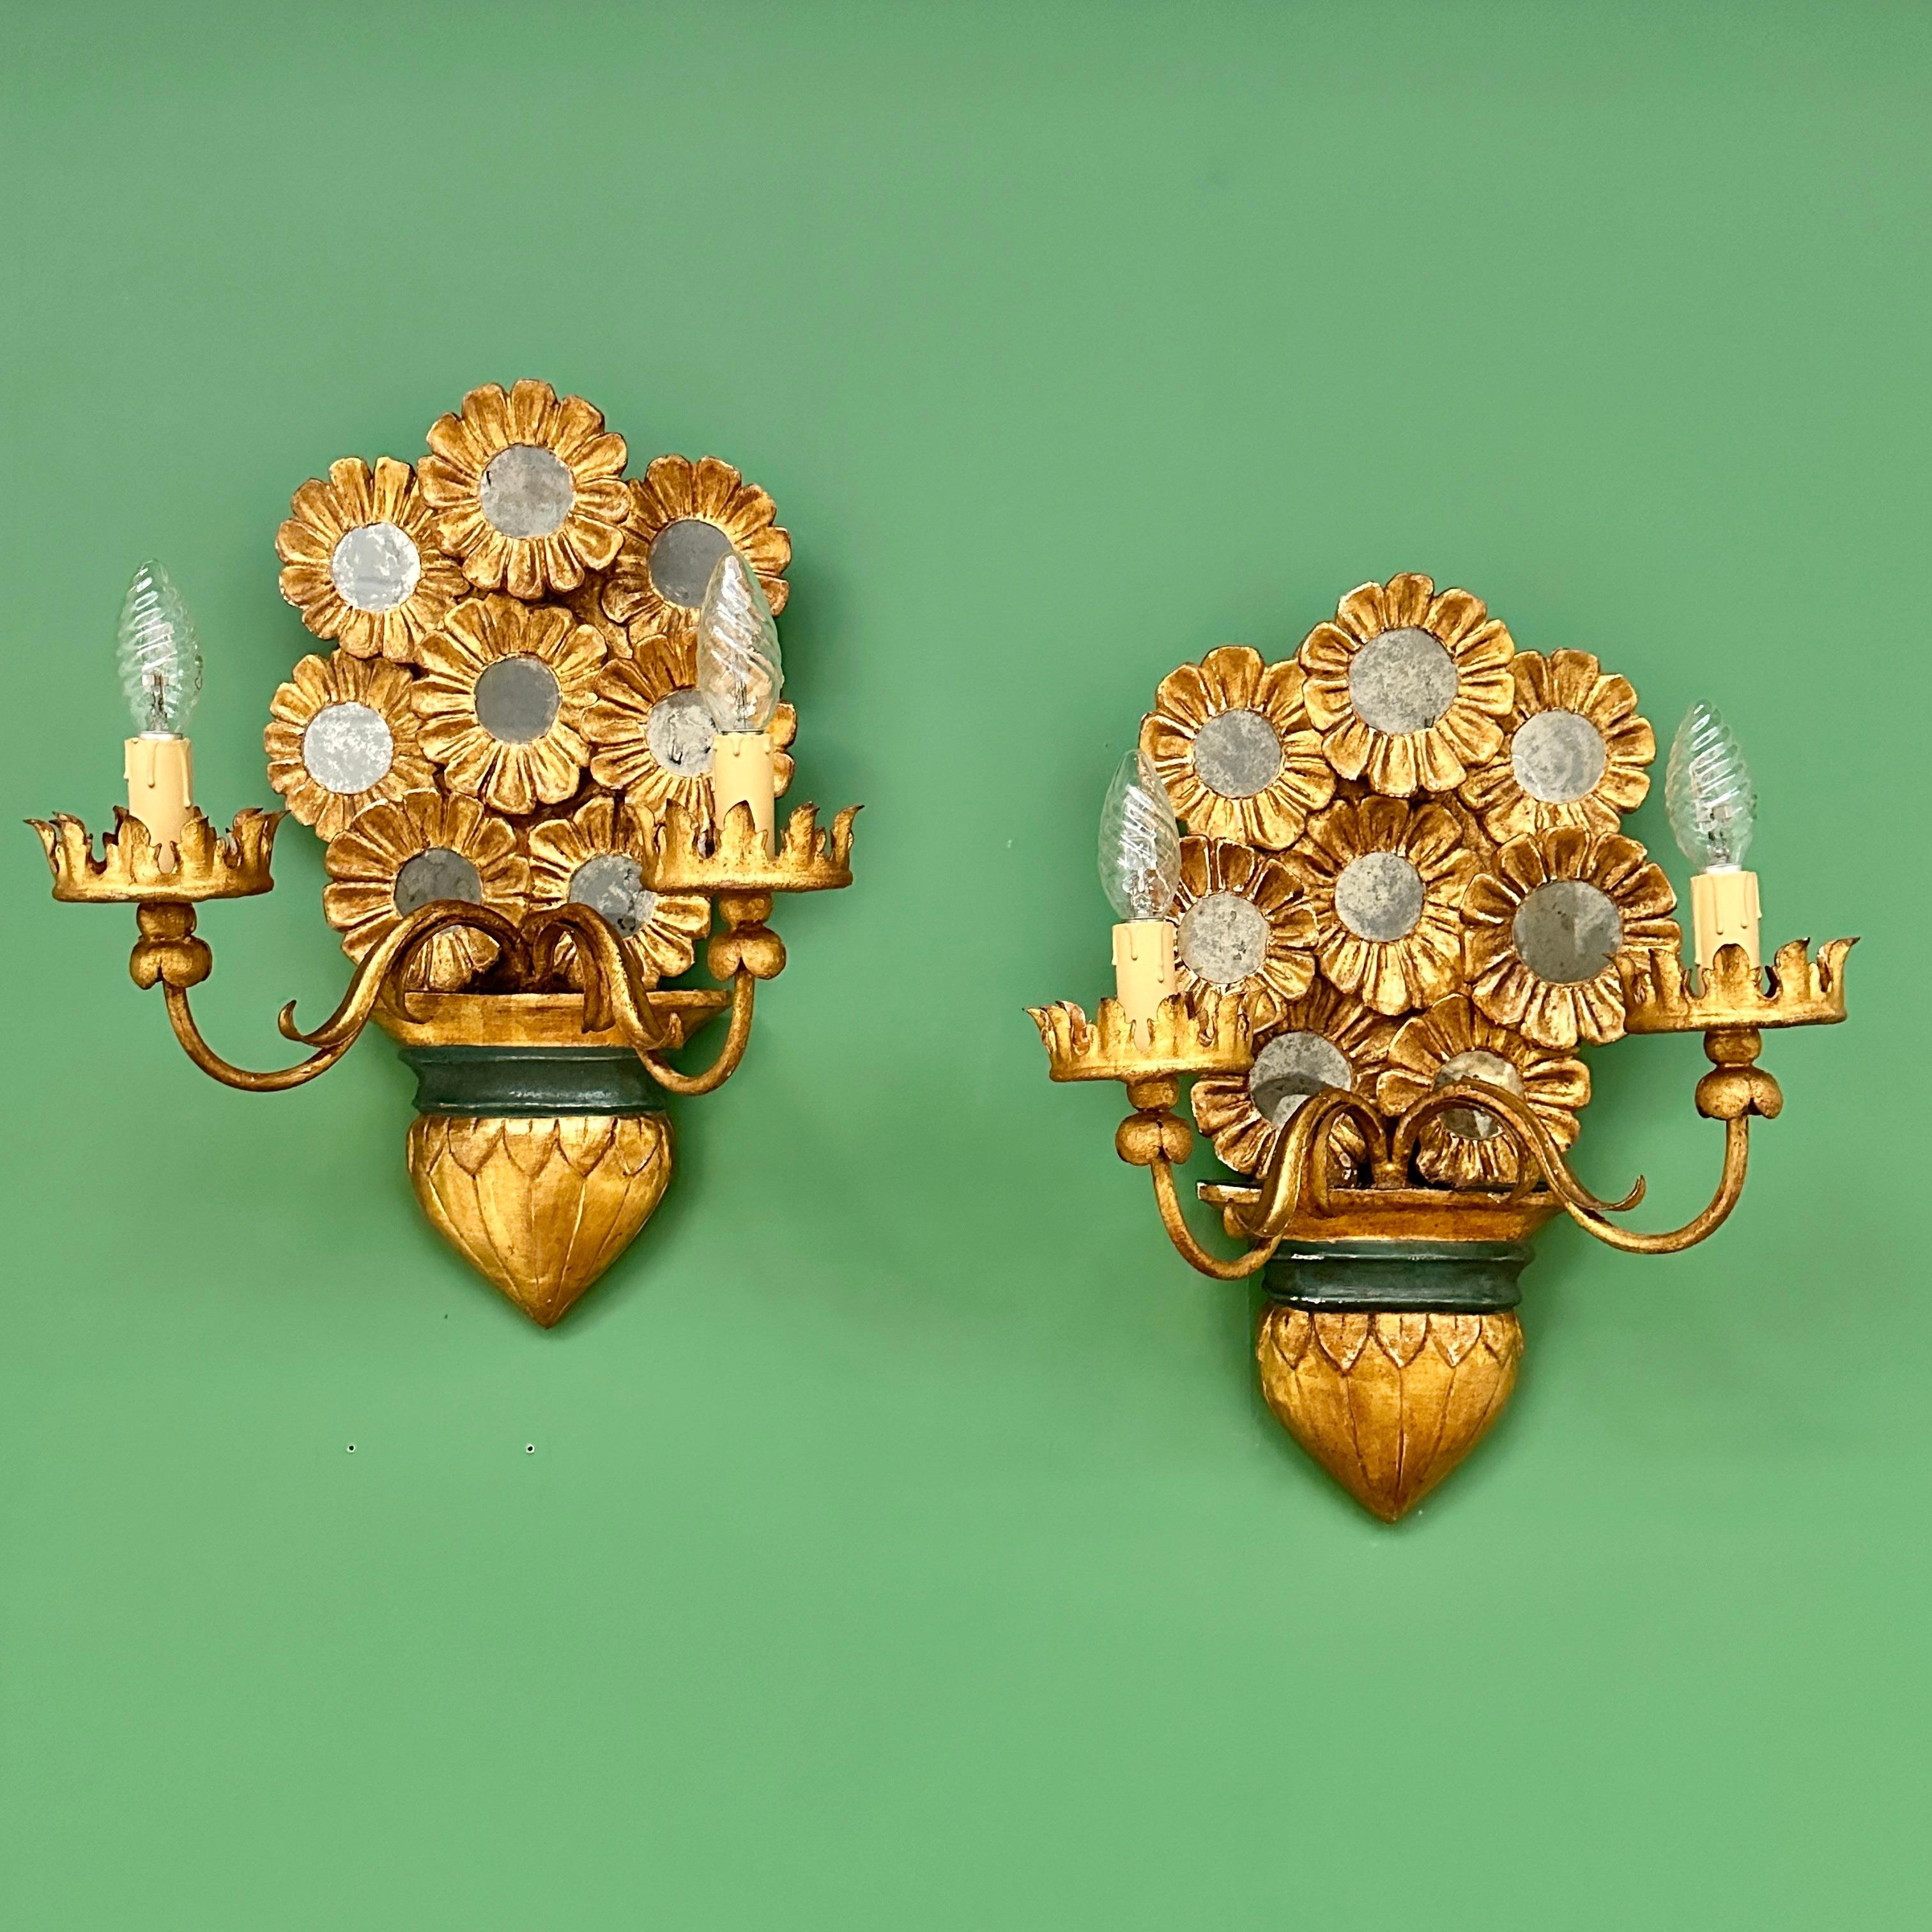 Paar italienische Wandleuchten aus Goldholz aus dem frühen 20. Jahrhundert (1 von 2 verfügbaren Paaren).

Außergewöhnliche und einzigartige geschnitzte Wandleuchter mit acht dekorativen Blumen, die jeweils mit einem wunderschön gebrochenen Spiegel